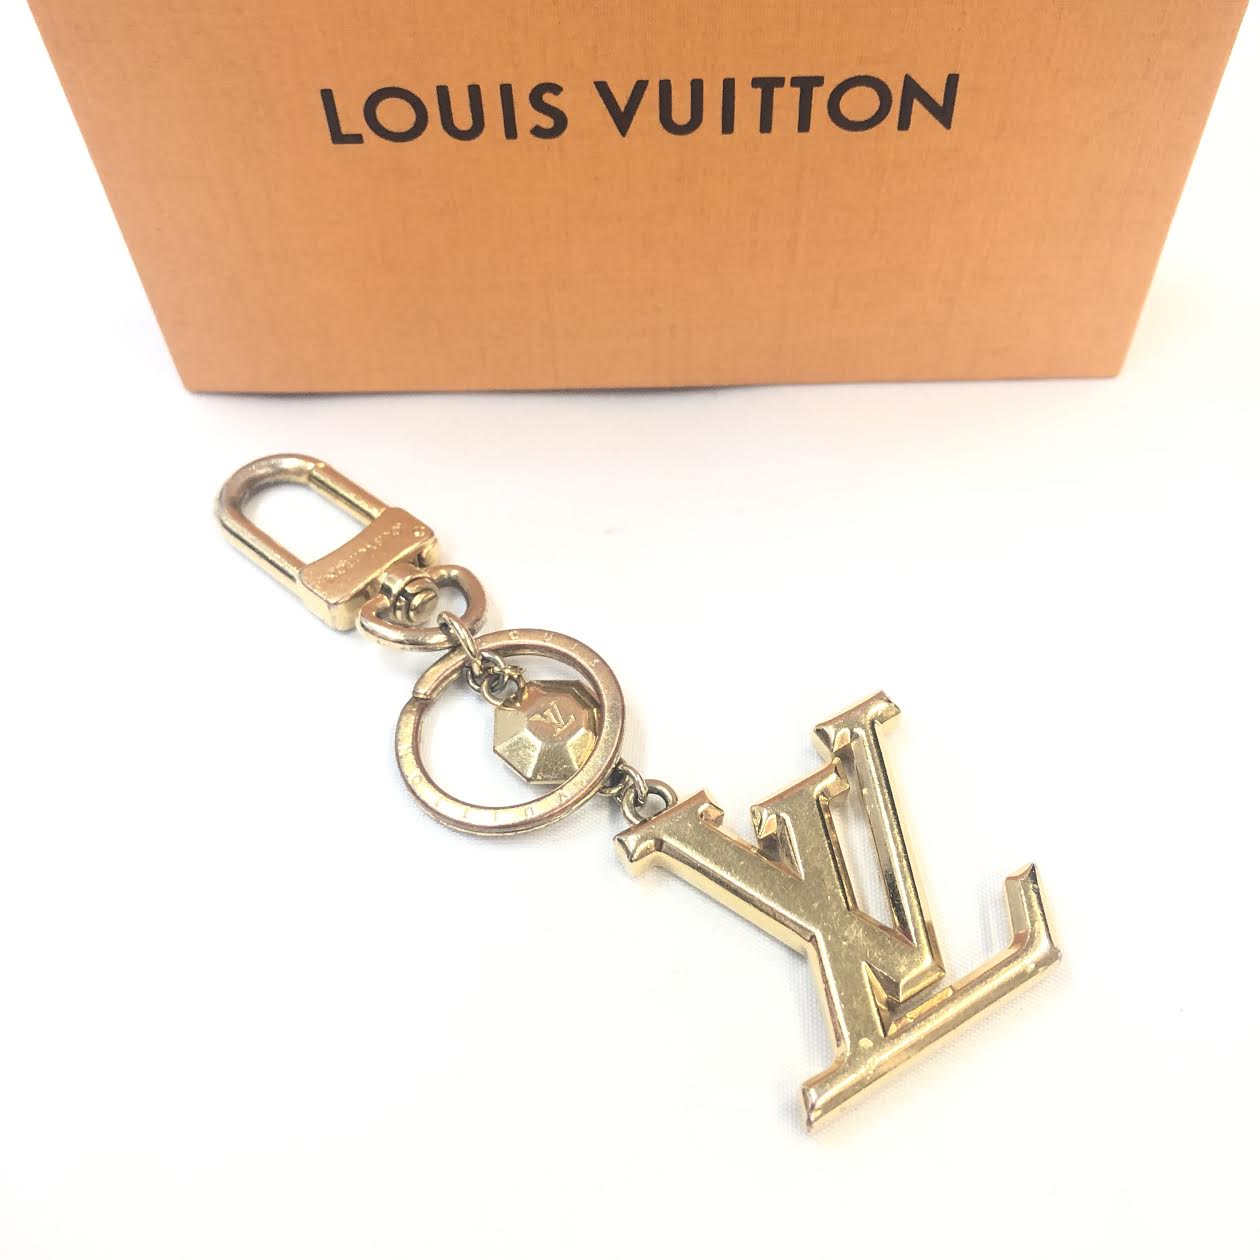 LOUIS VUITTON Key Chain – Labels Luxury